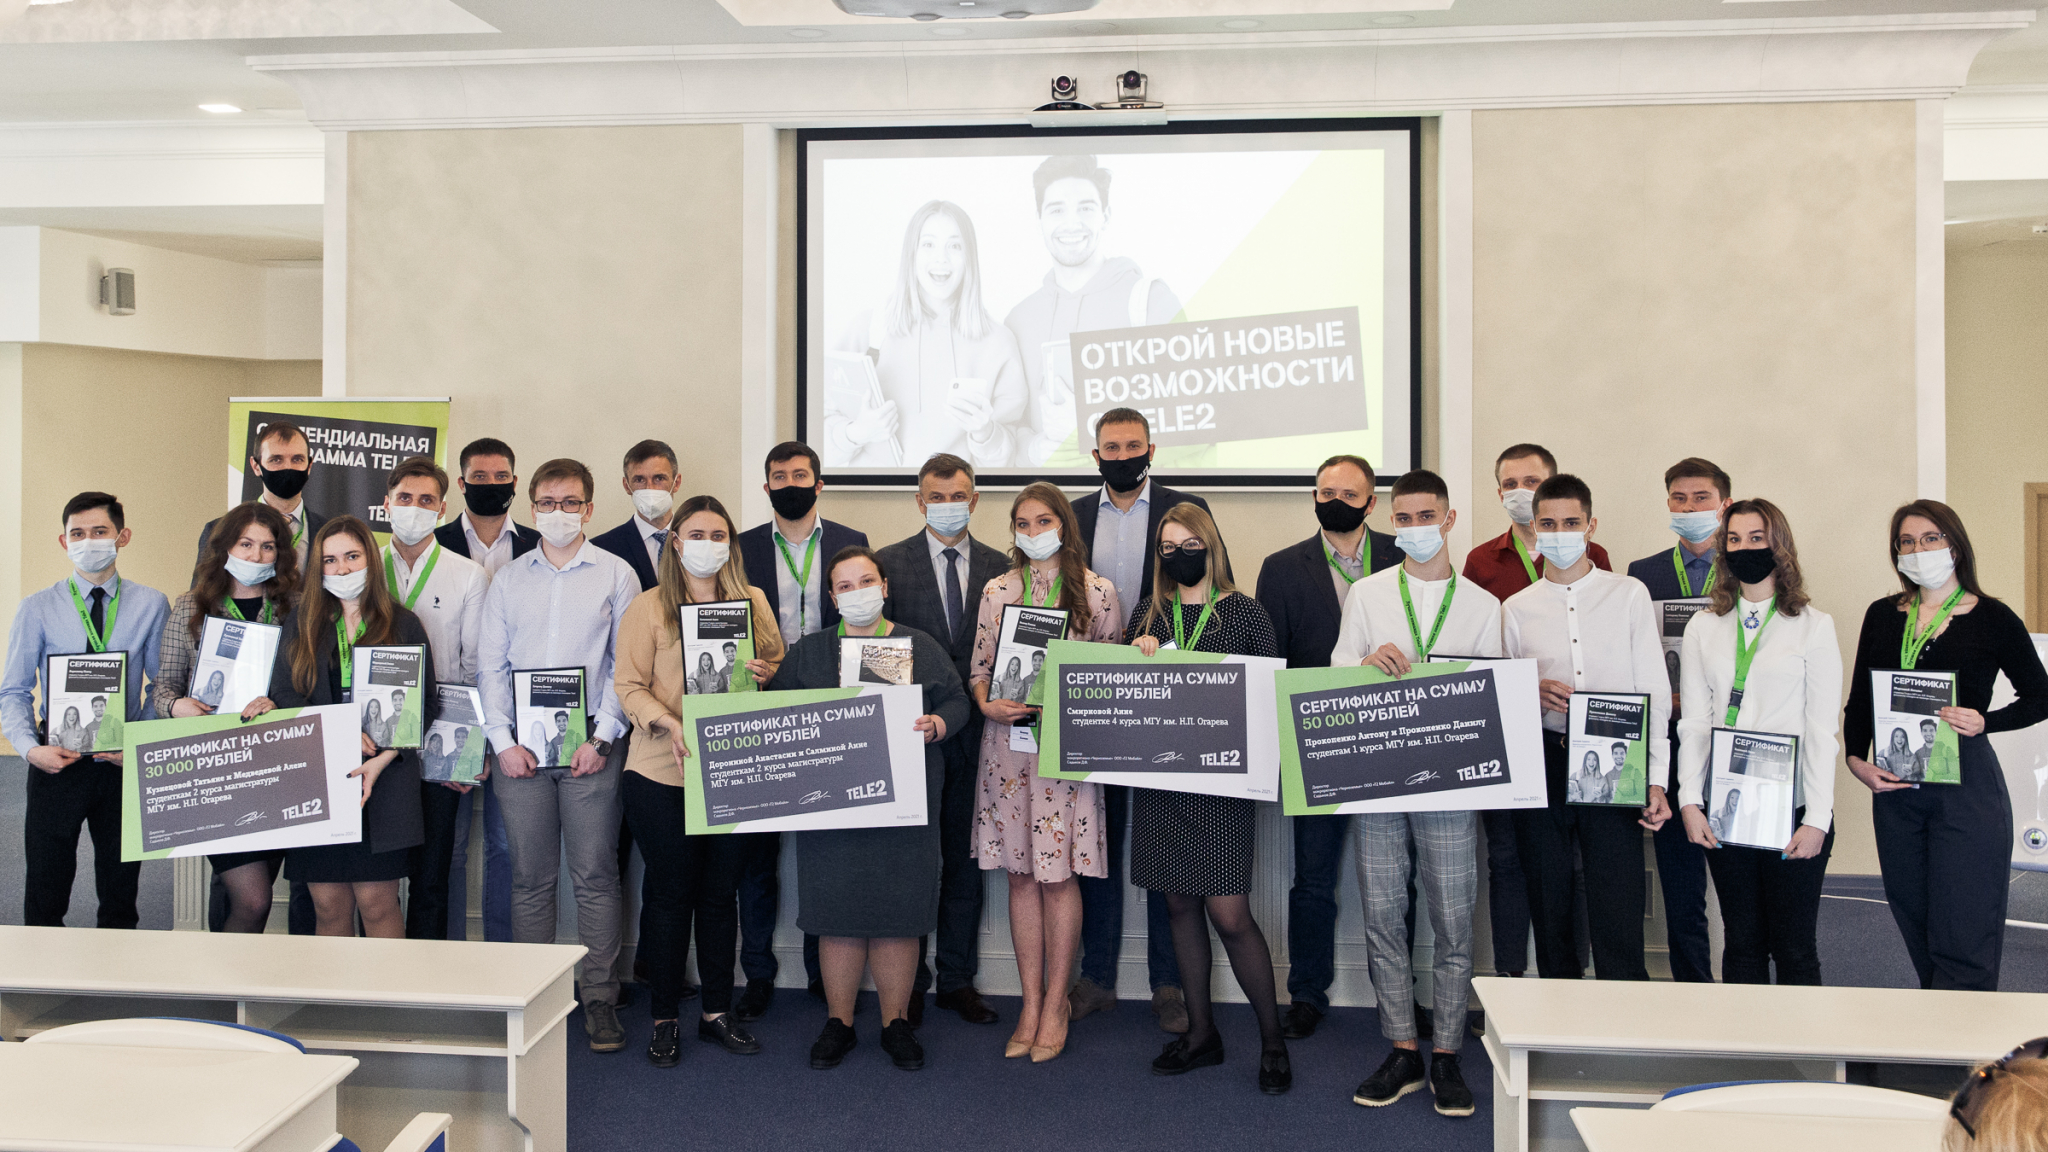 Студентов Мордовского госуниверситета наградили именными стипендиями Tele2